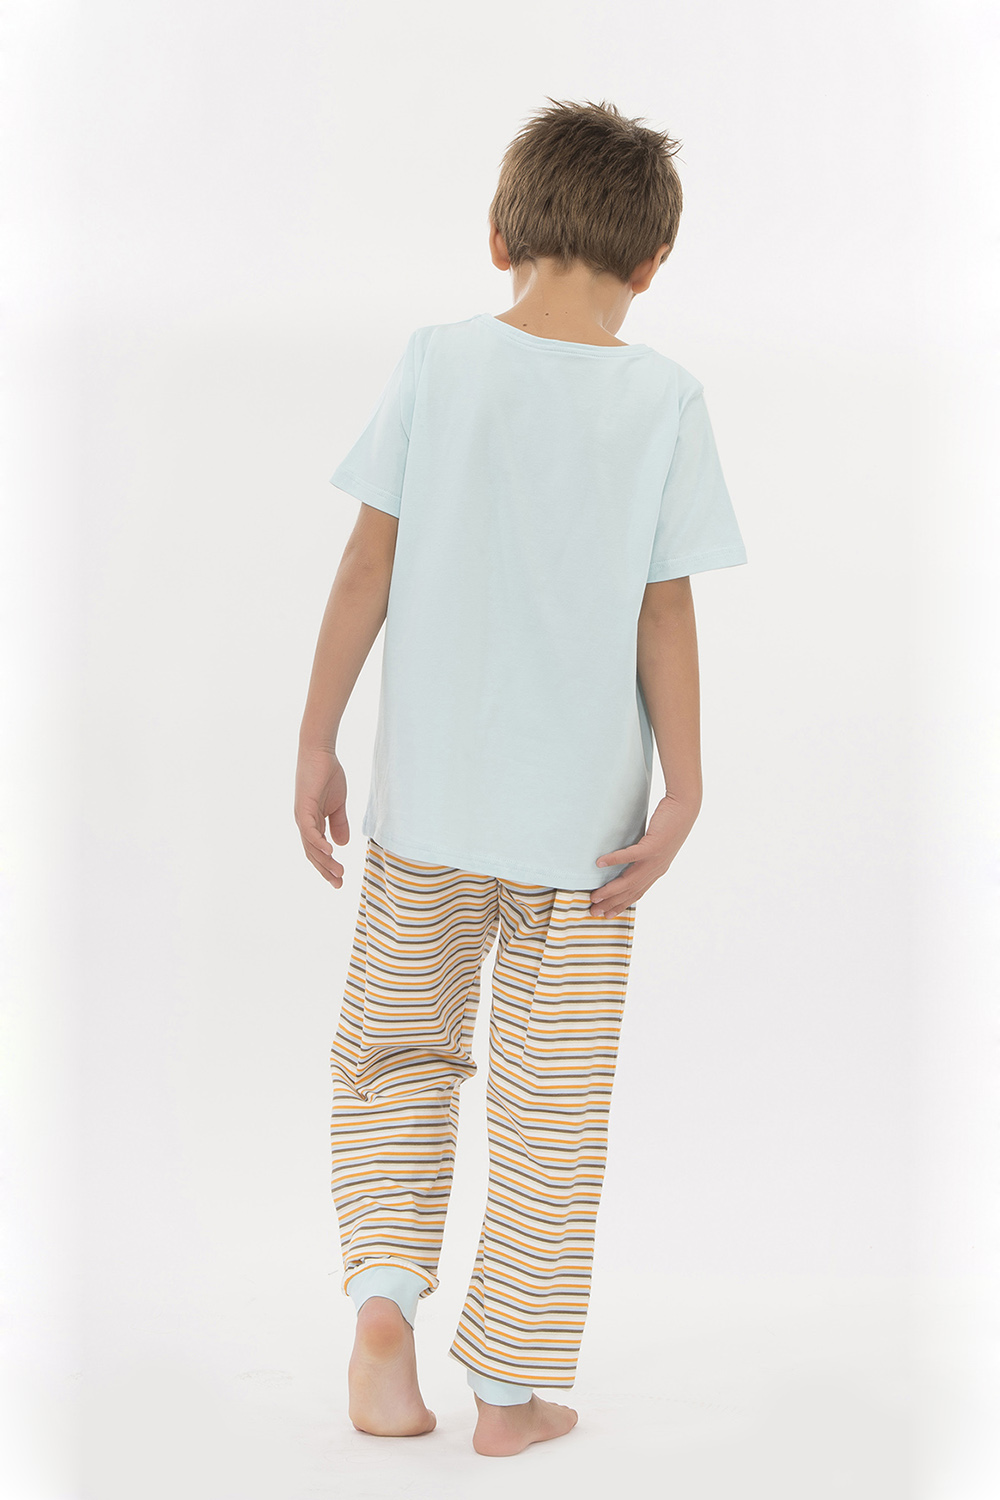 Hays Kids Penye Erkek Çocuk Kısa Kol Alt Uzun Pijama Takımı